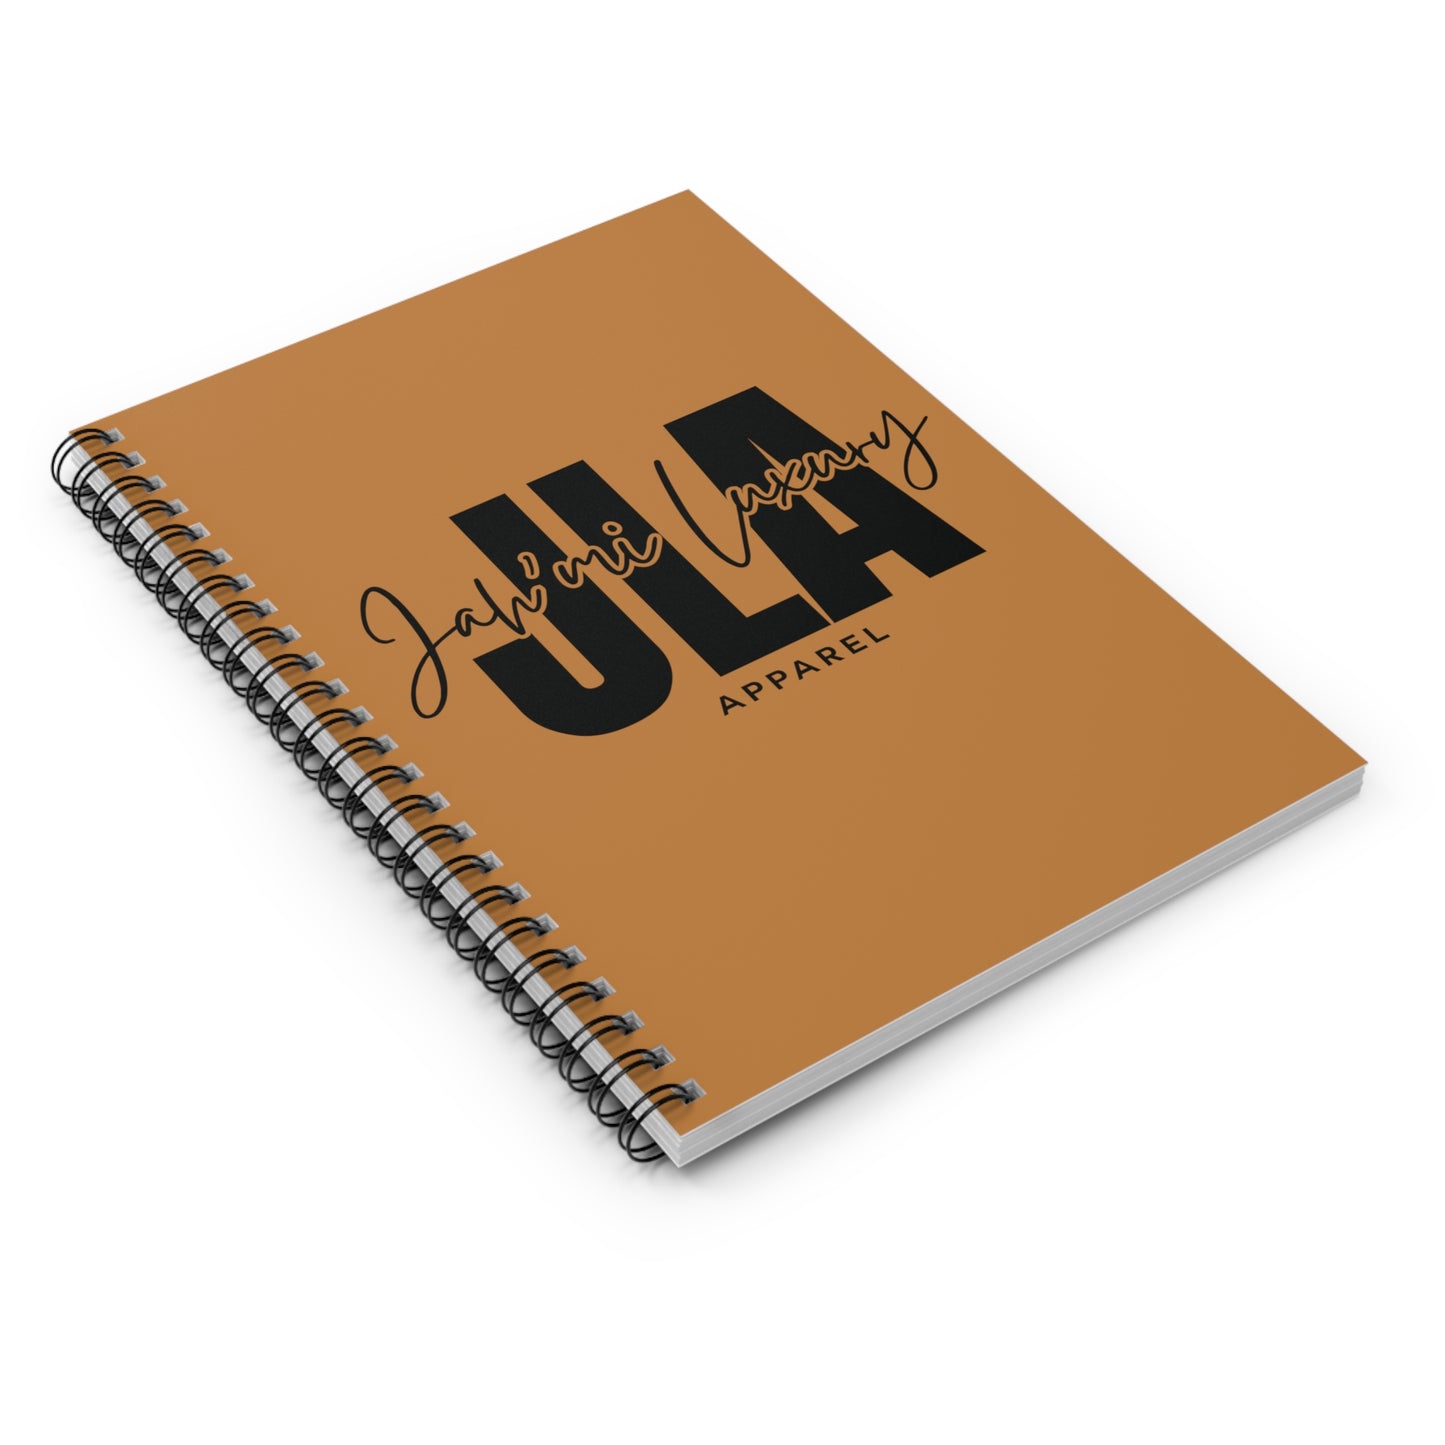 Jah’mi Luxe Journal